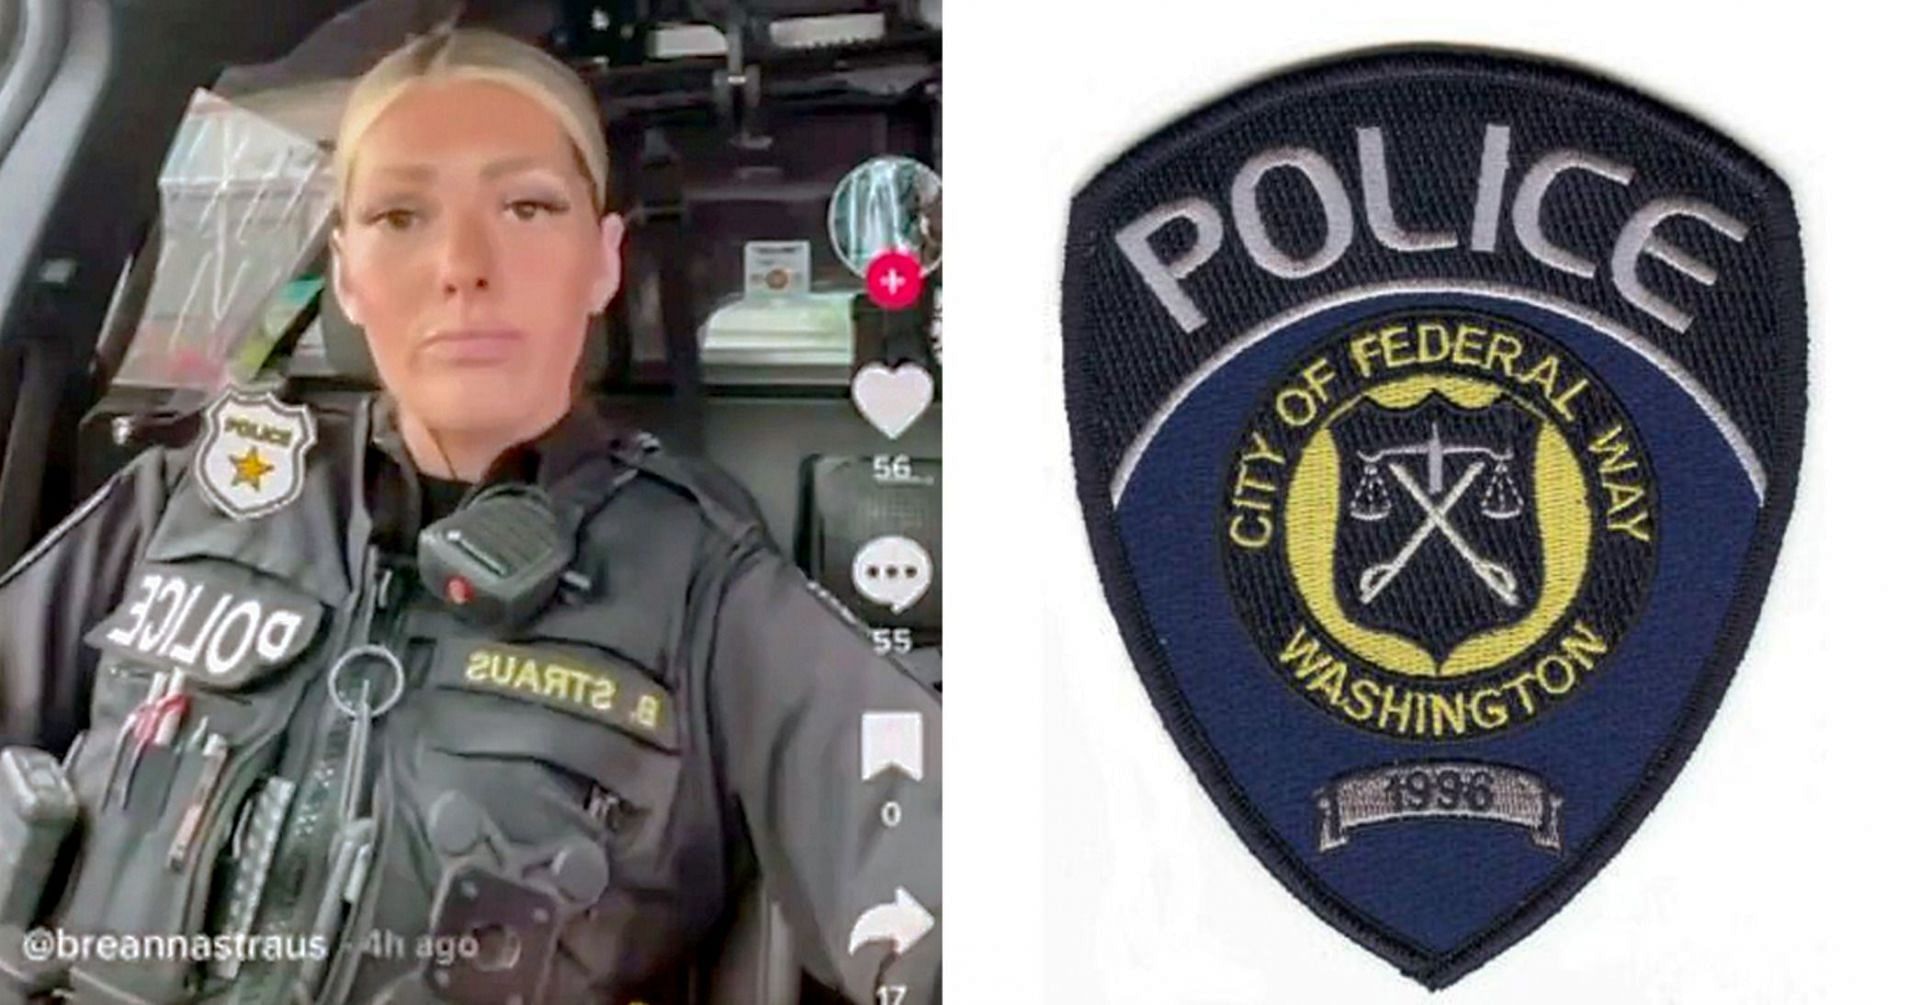 Police officer Breanna Straus gains immense backlash for TikTok video (Image via breannastrauss/TikTok and Federal Way Police))